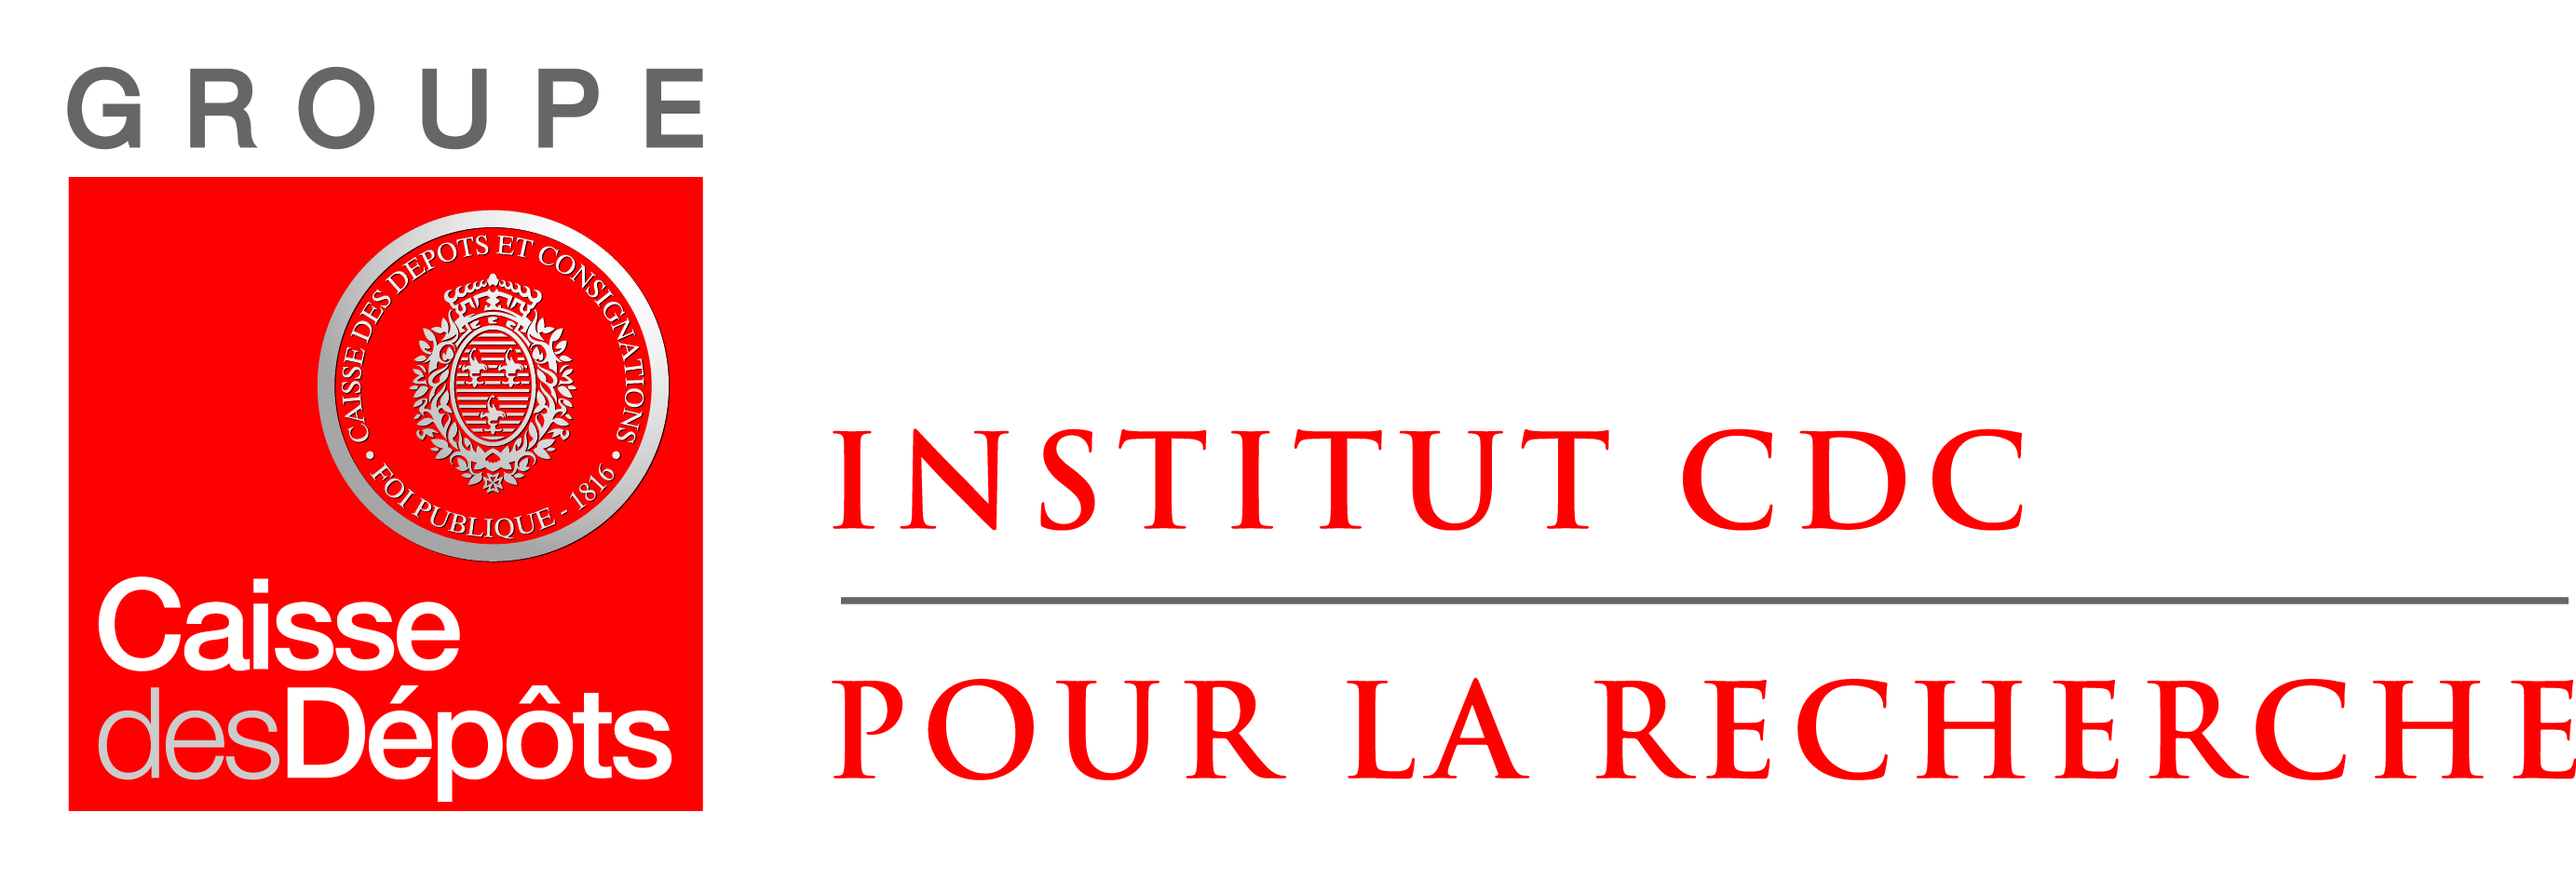 Logo_Institut_CDC_quadri.jpg